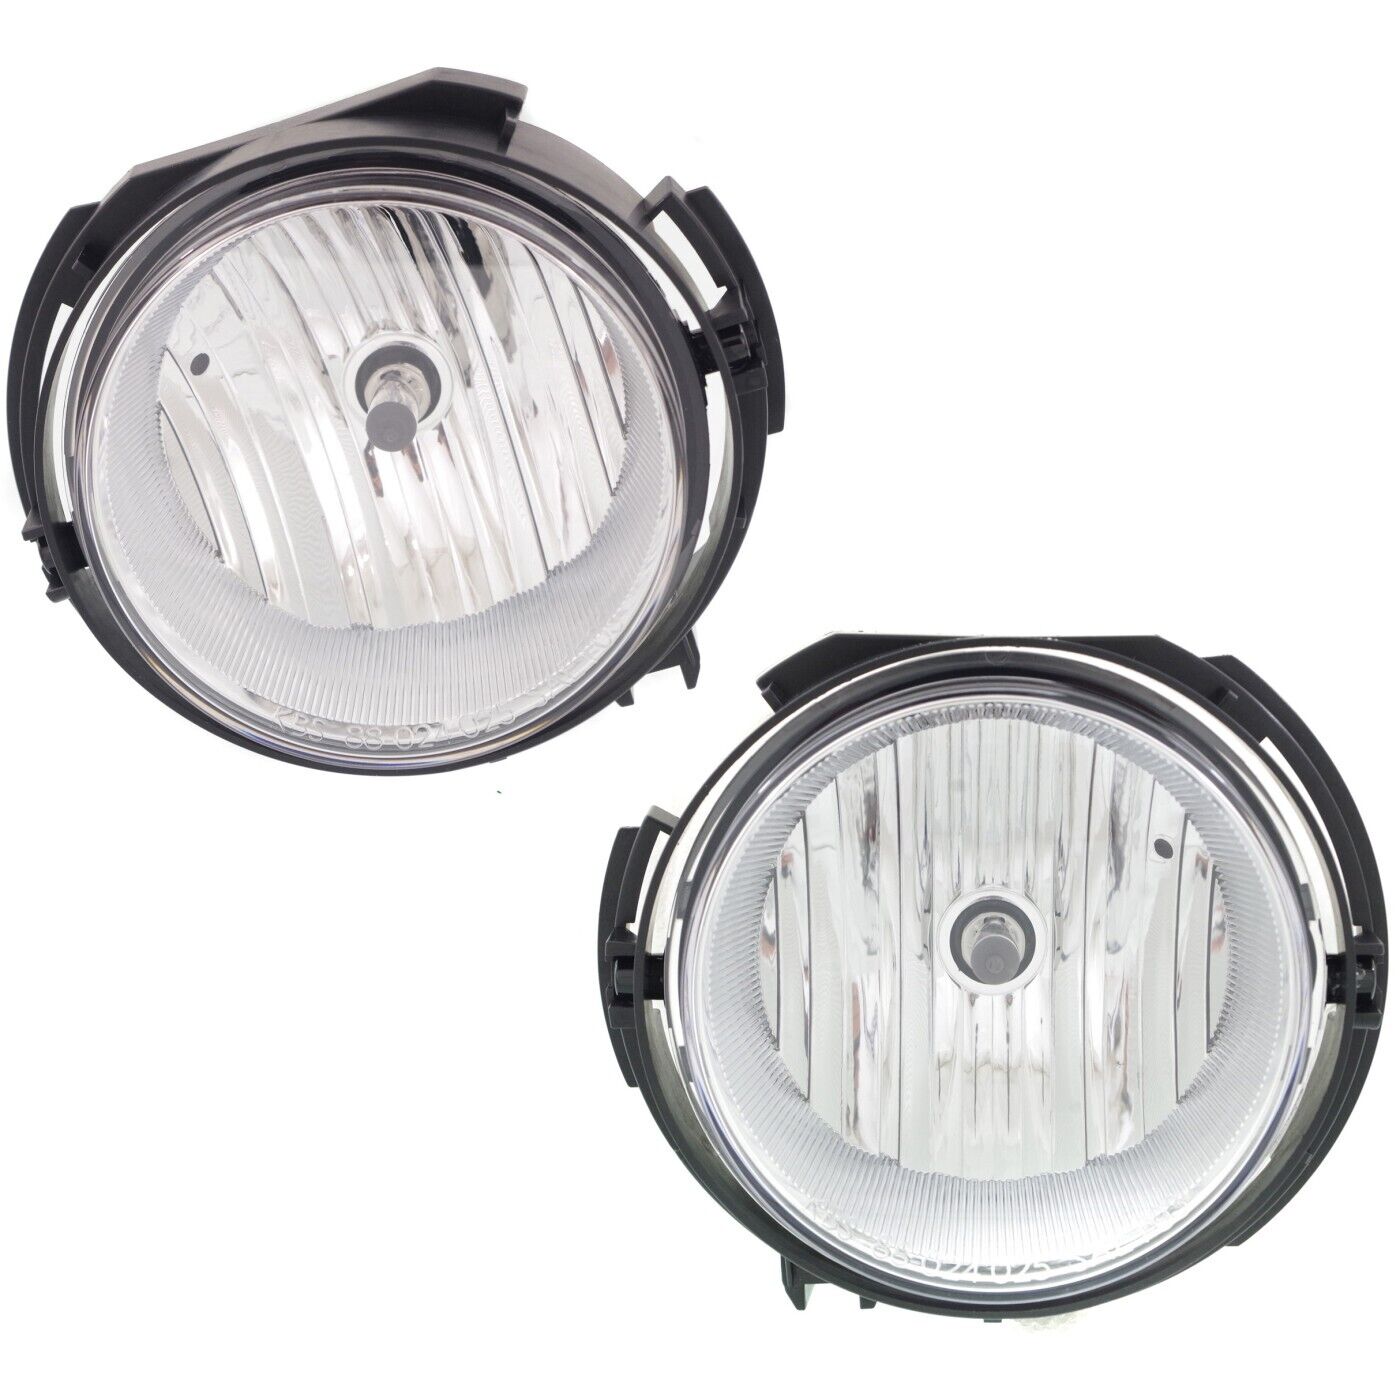 Set of 2 Clear Lens Fog Light For 2006-11 Chevrolet HHR LH & RH CAPA w/ Bulbs